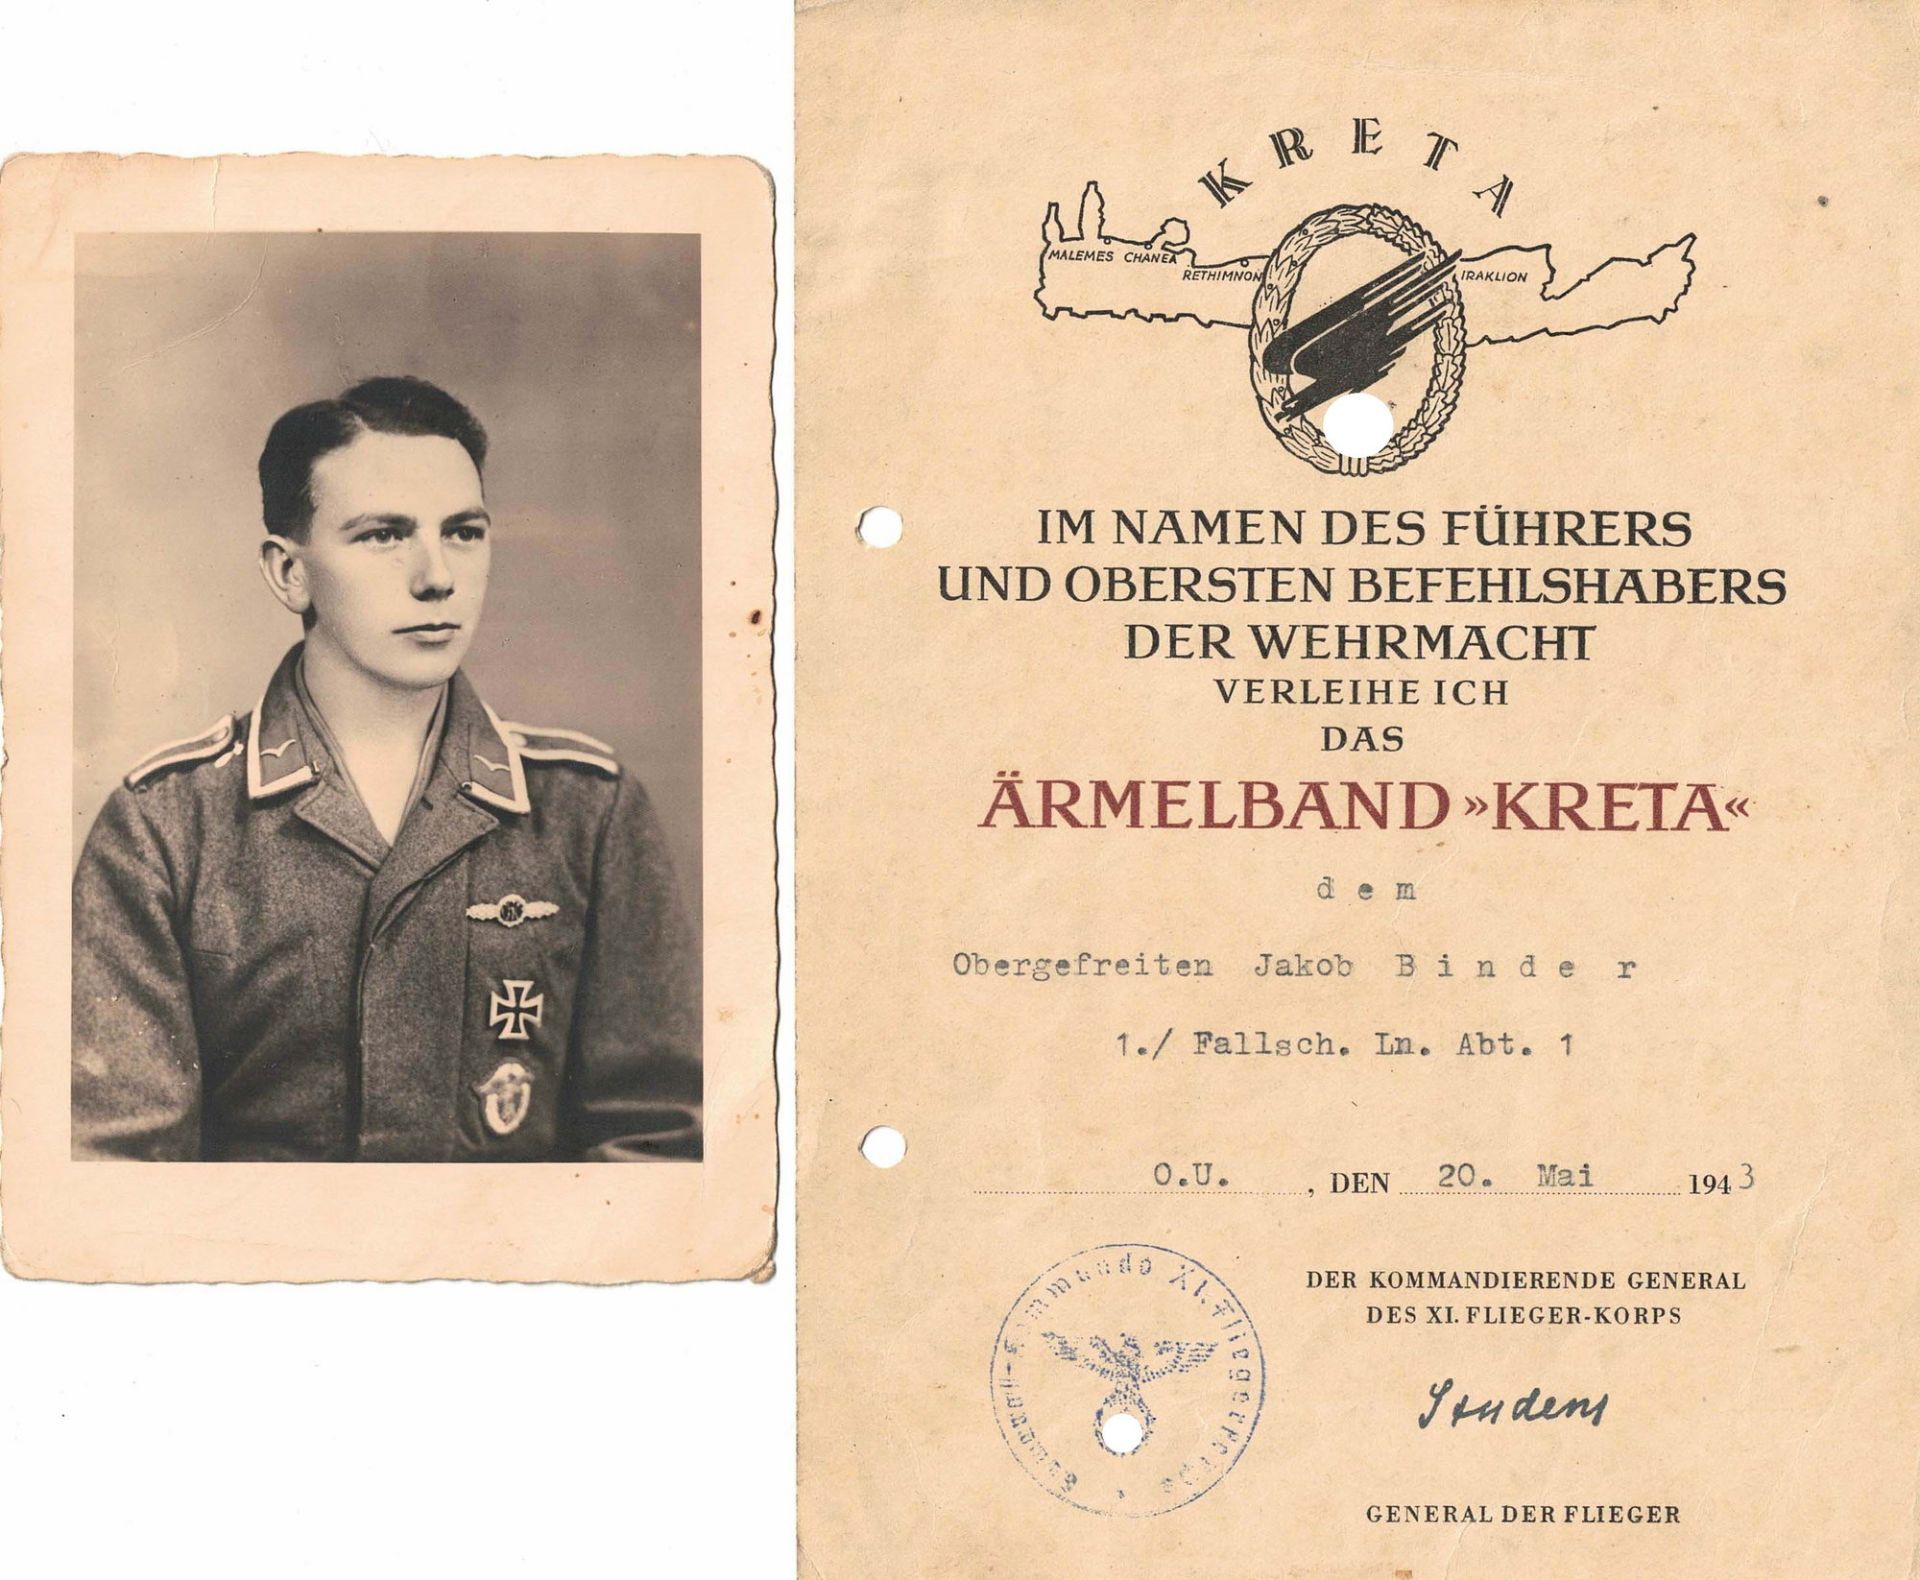 3. Reich Verleihungsurkunde eines Obergefreiten 1. Fallschirm Leutnant Abteilung 1 für das "